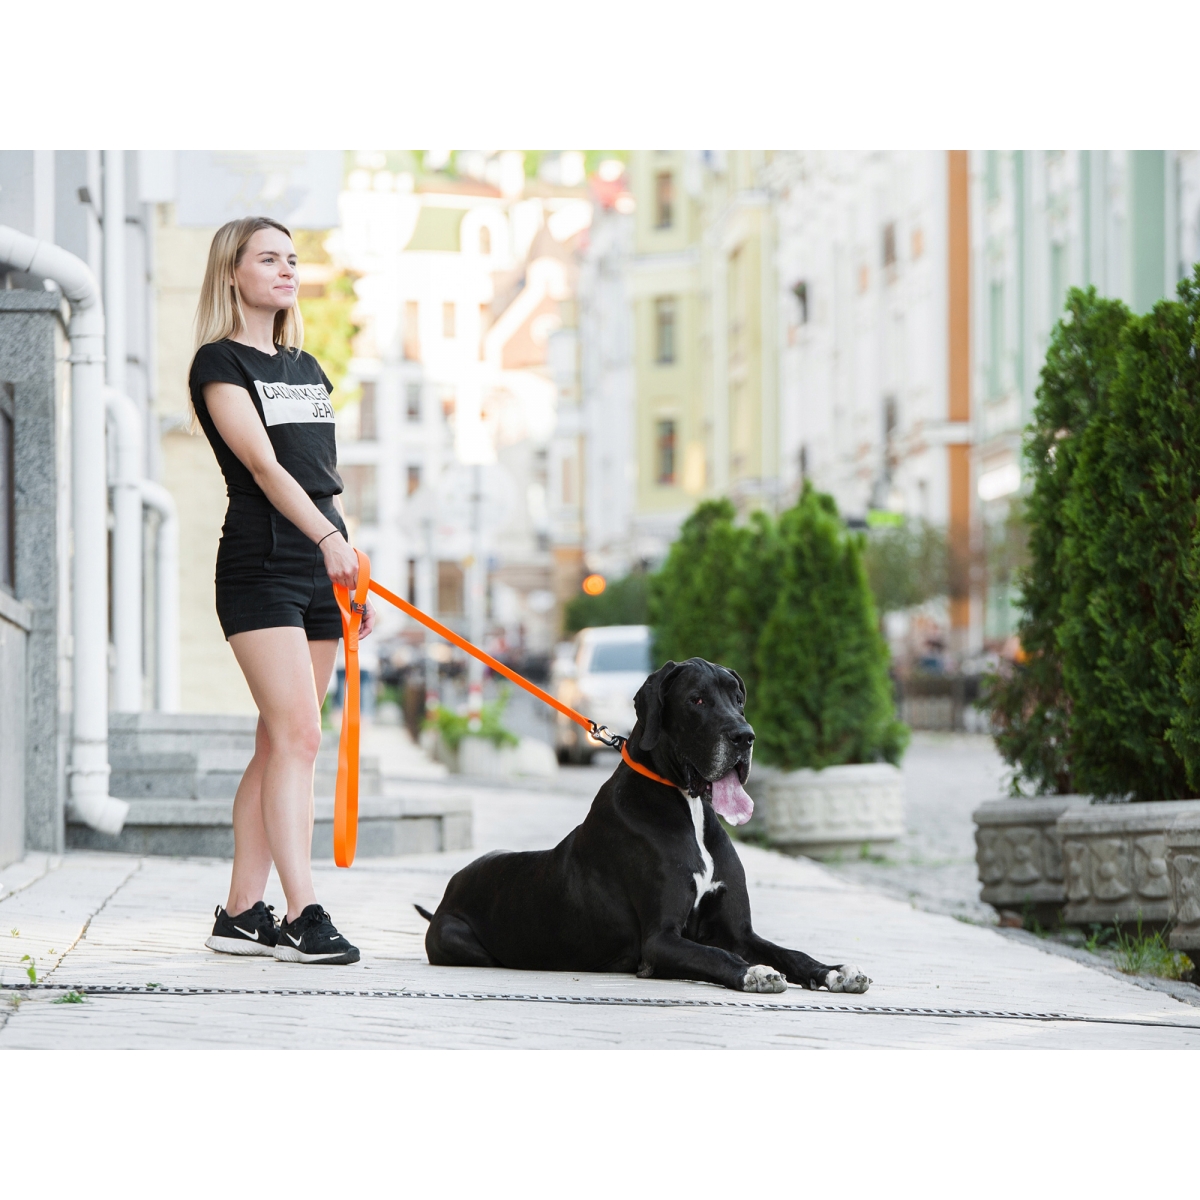 Smycz dla psów COLLAR EVOLUTOR szerokość 25 mm – NAJMOCNIEJSZA SMYCZ, pomarańczowa